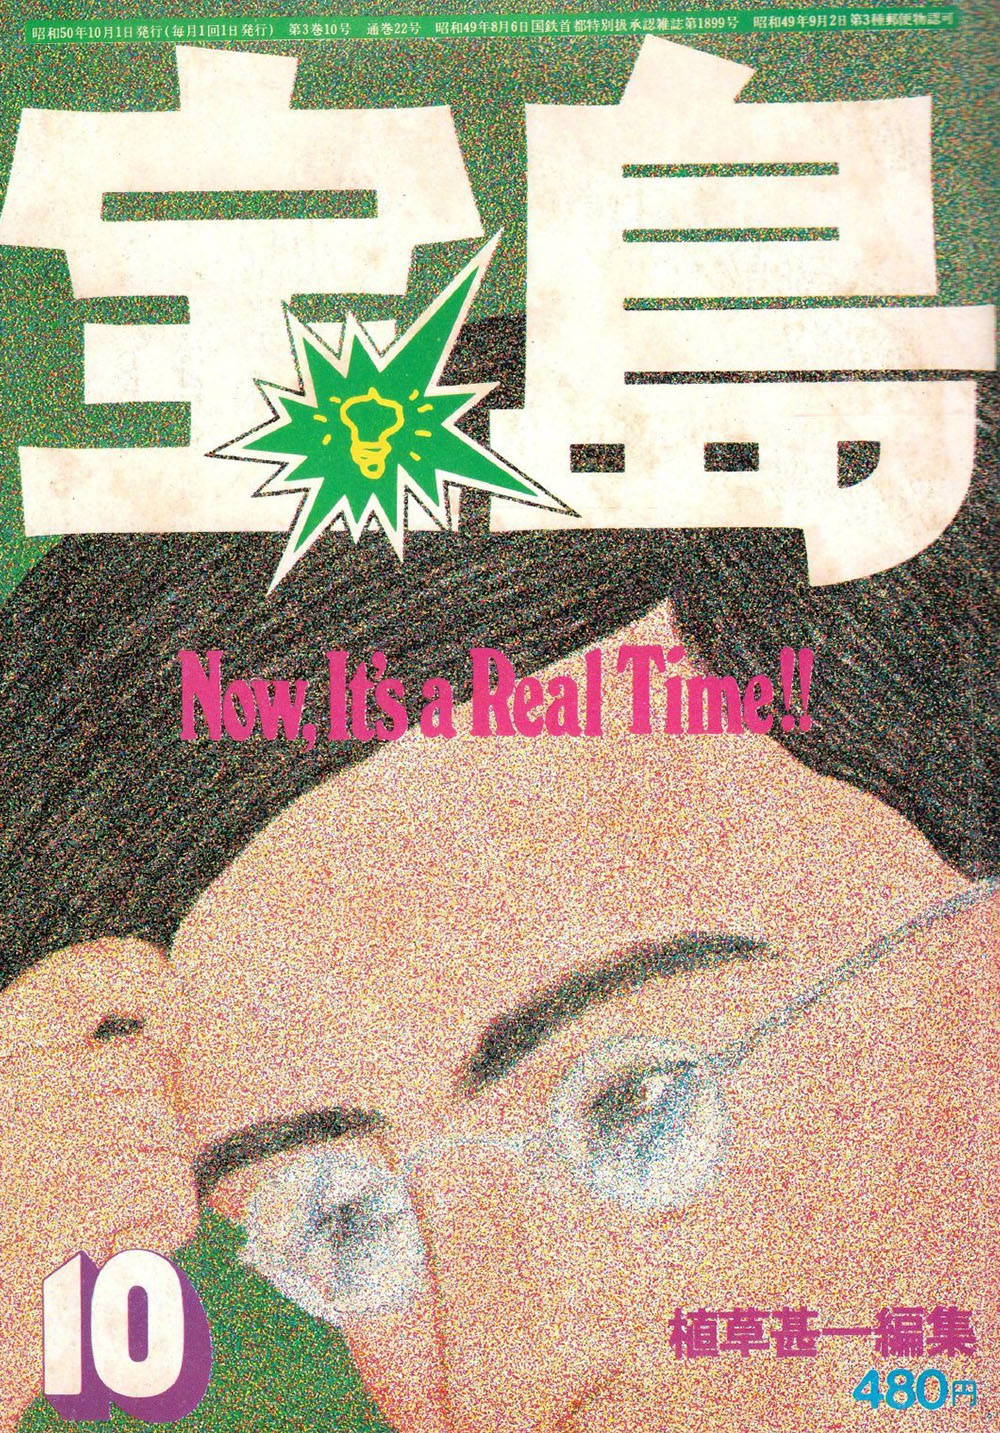 好看！日本杂志《宝岛》70年代封面设计